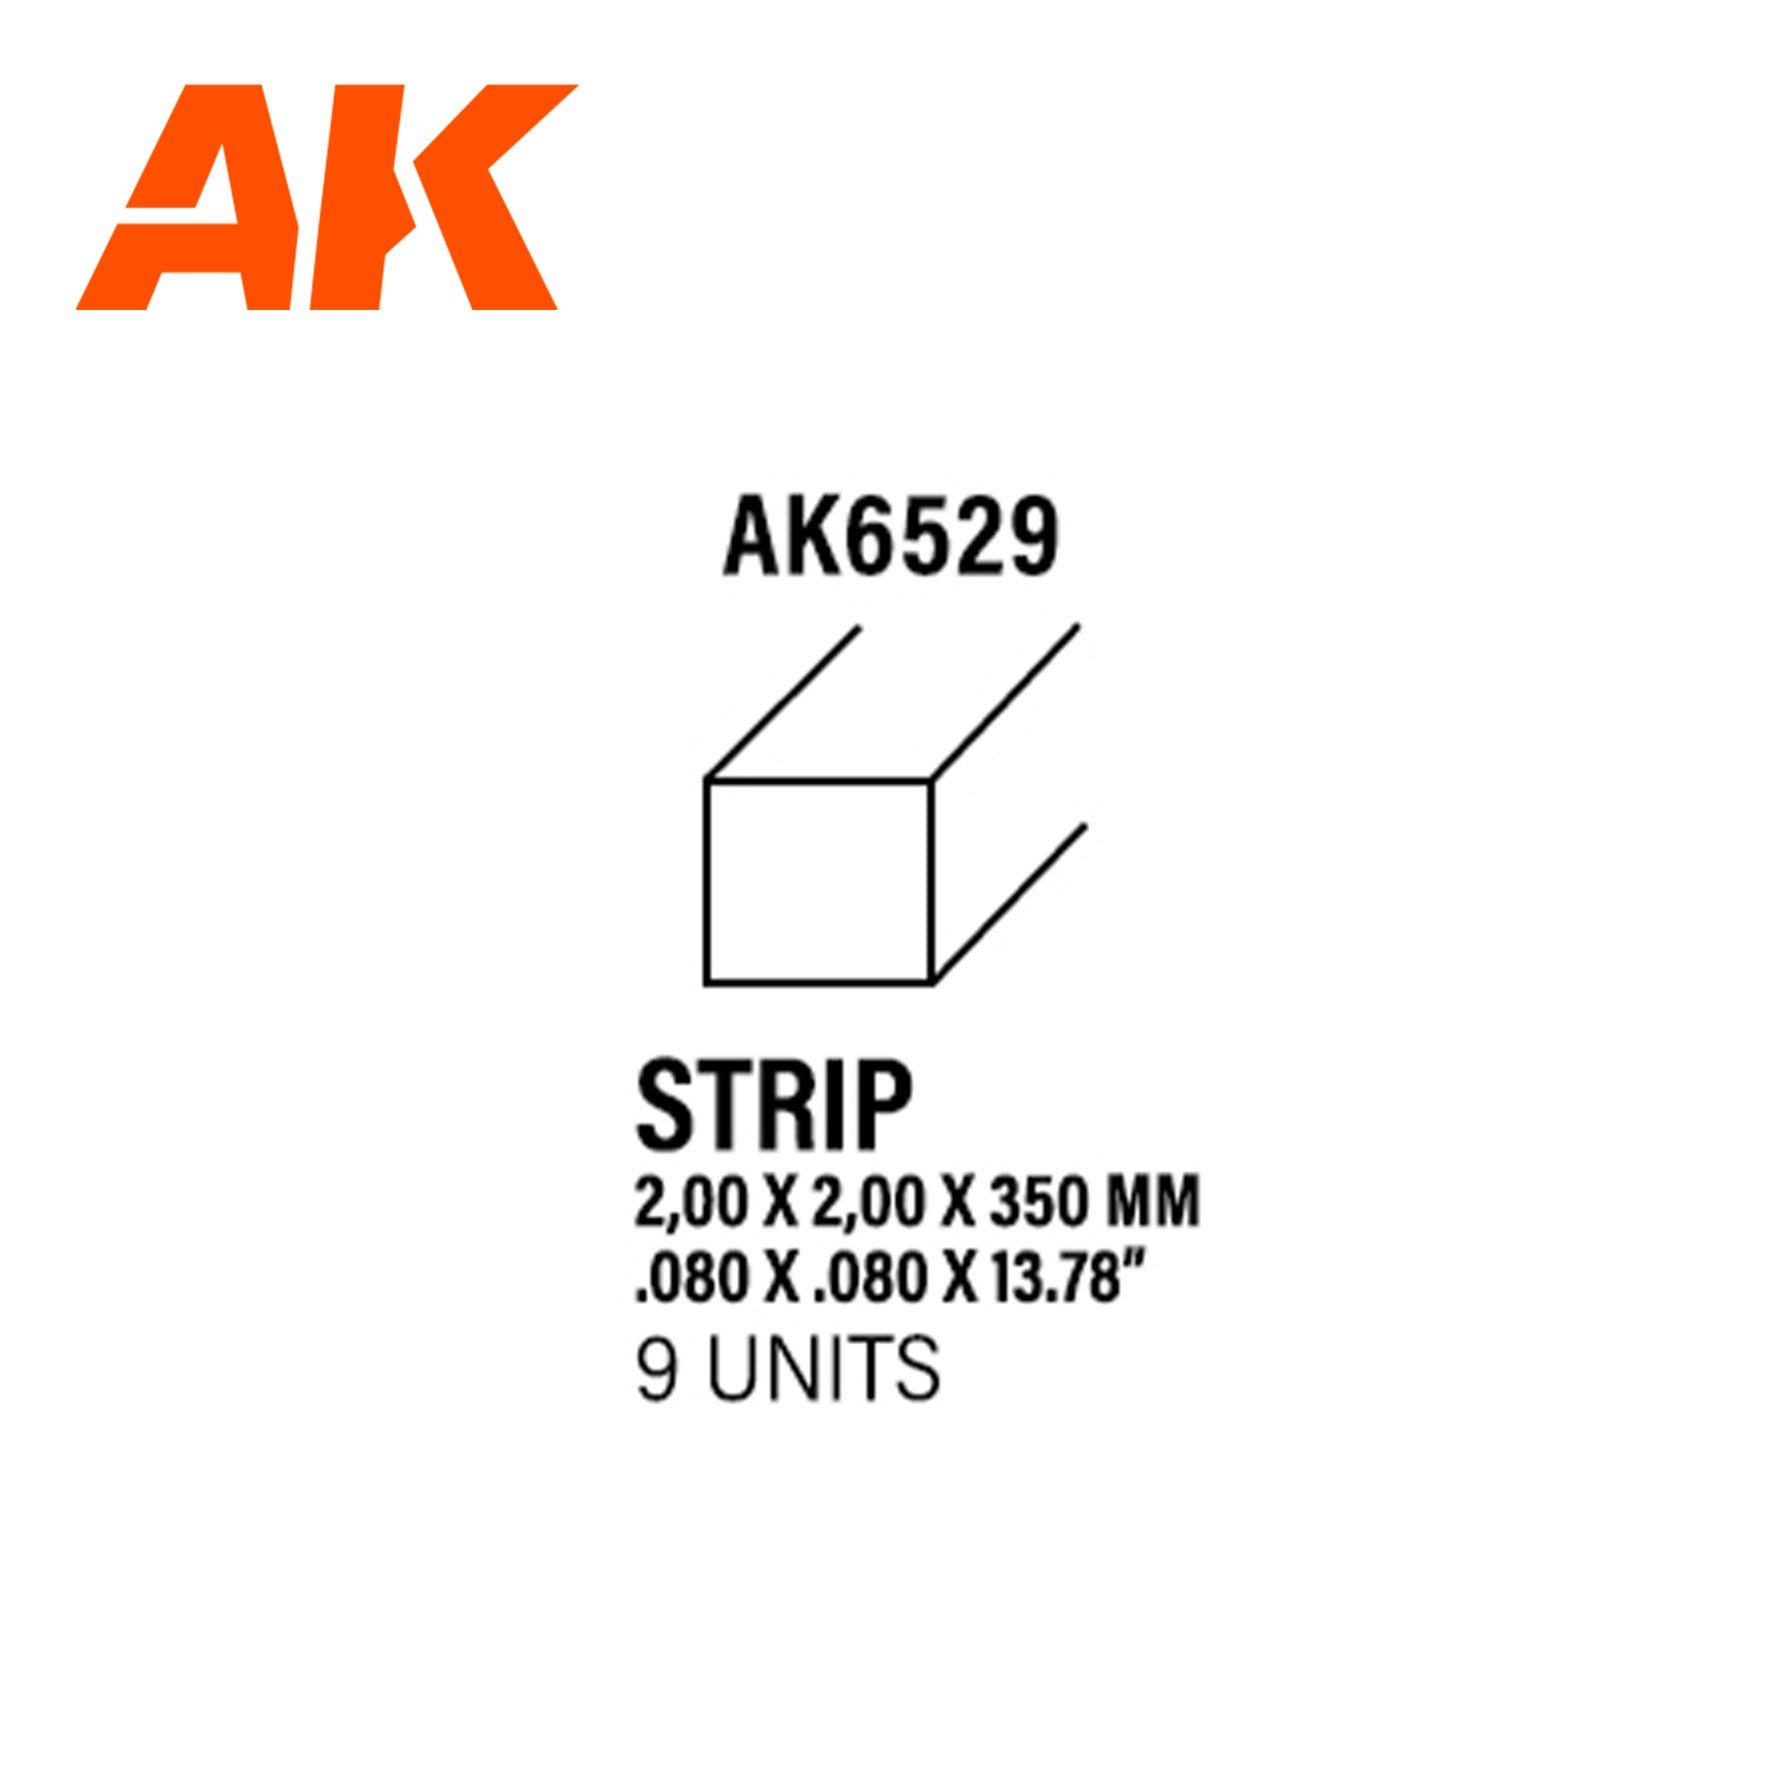 AK6529 - Styrene Strip - 2.00 x 2.00 x 350mm (9 units)